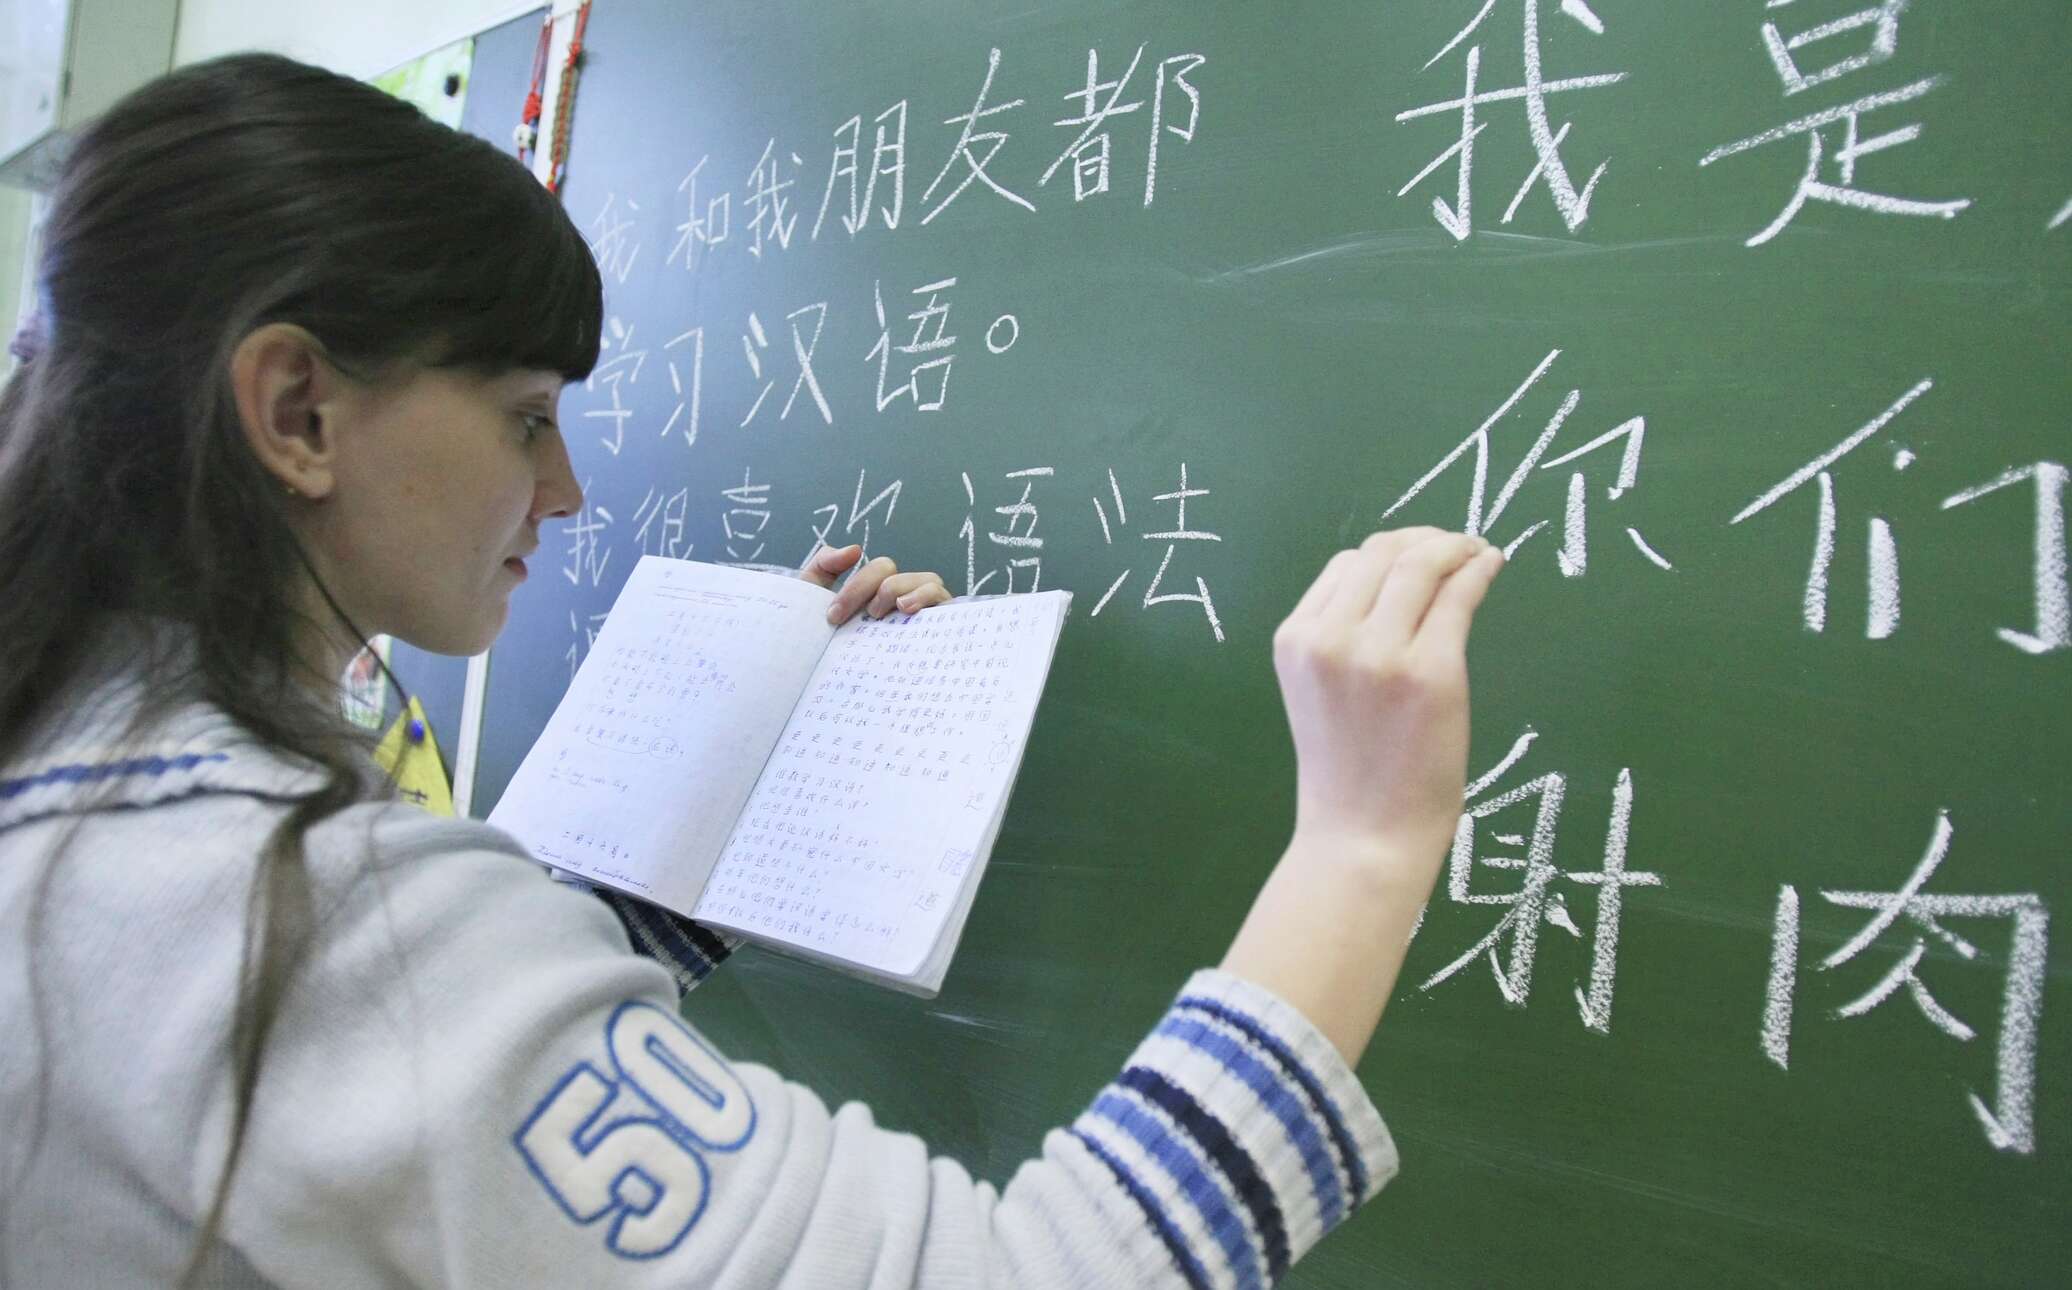 Нужный шестнадцать. Китайский язык. Kitaiskii iazik. Изучать китайский язык. Китайский язык учить.